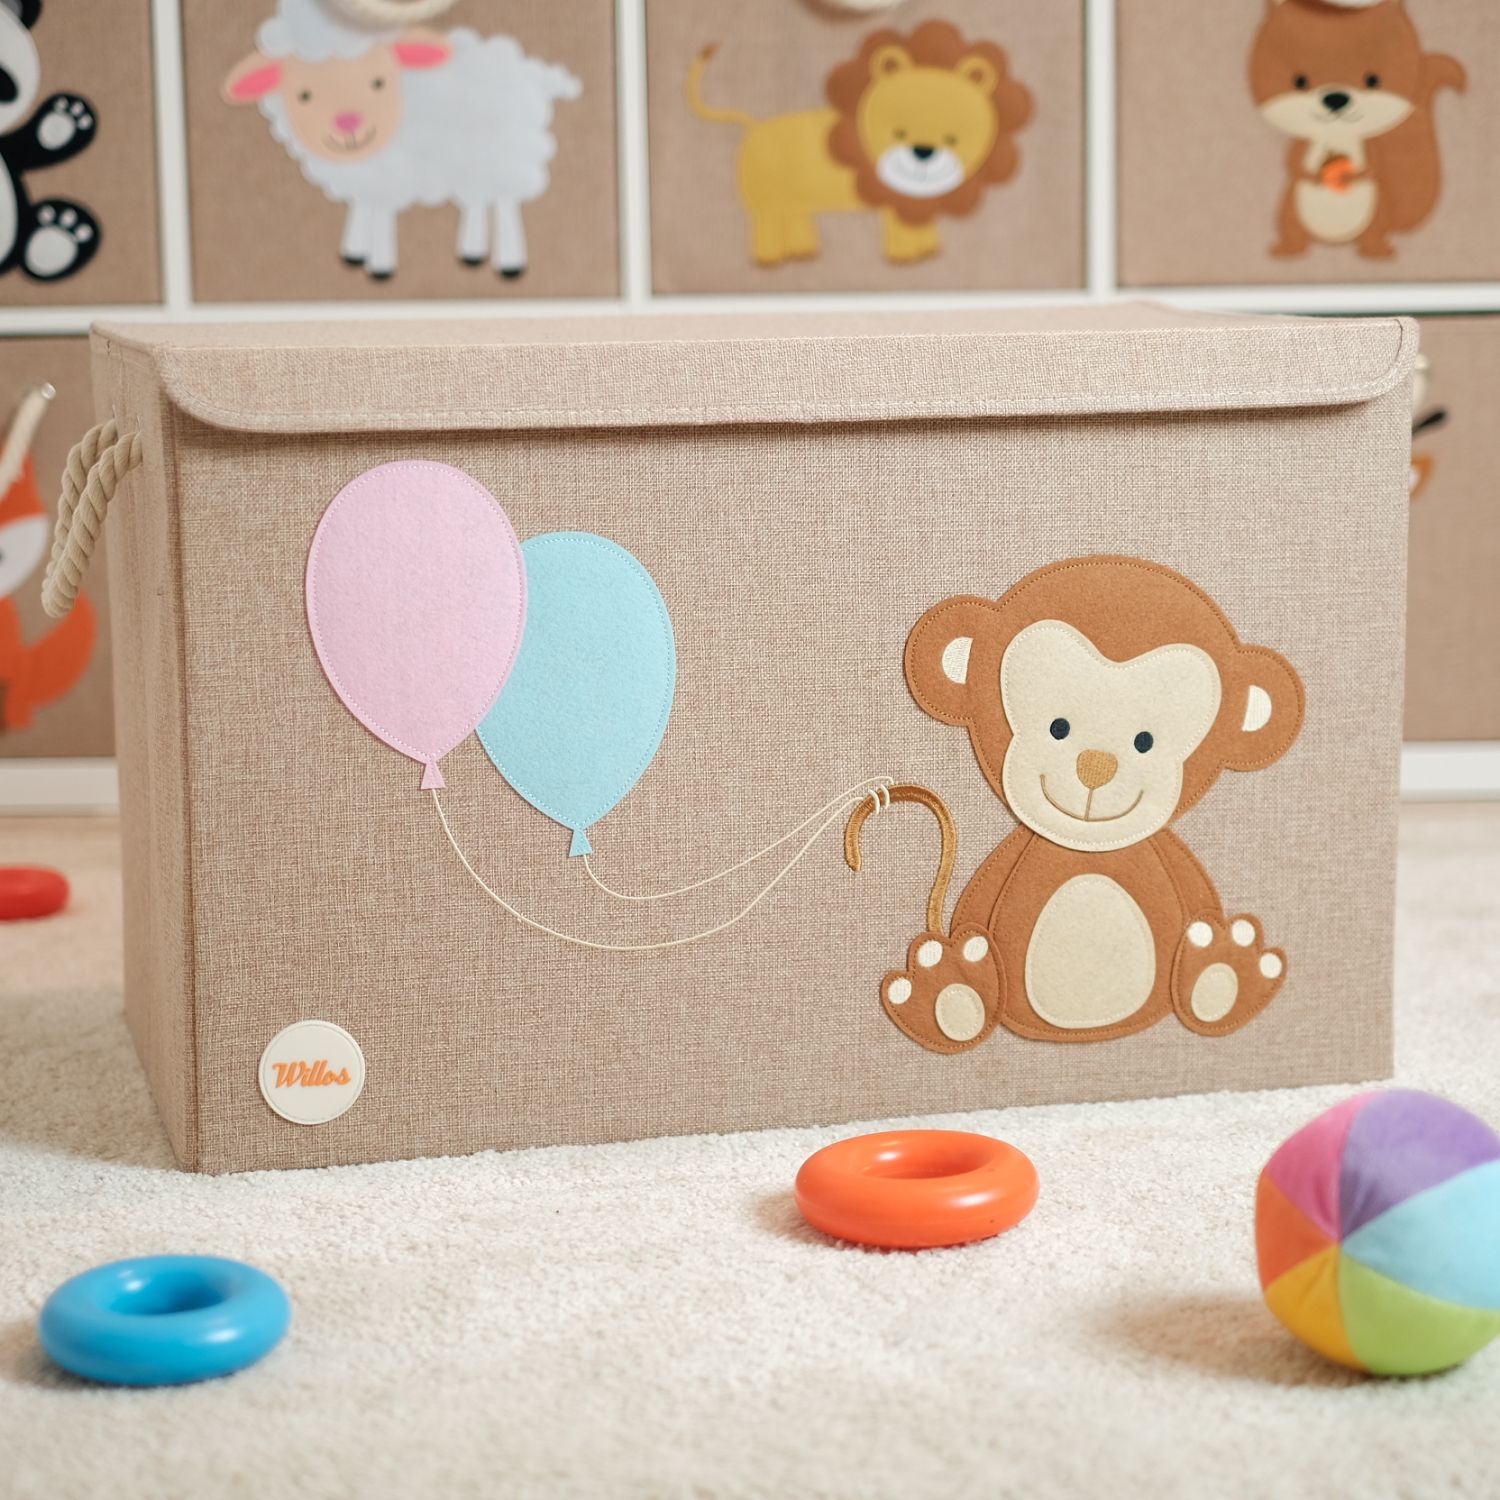 Aufbewahrungsbox & Kindermöbel Kinderzimmeraccessoires Kinderzimmer-Aufbewahrung Spielzeugbox Affe Baby & Kind Babyartikel Baby 